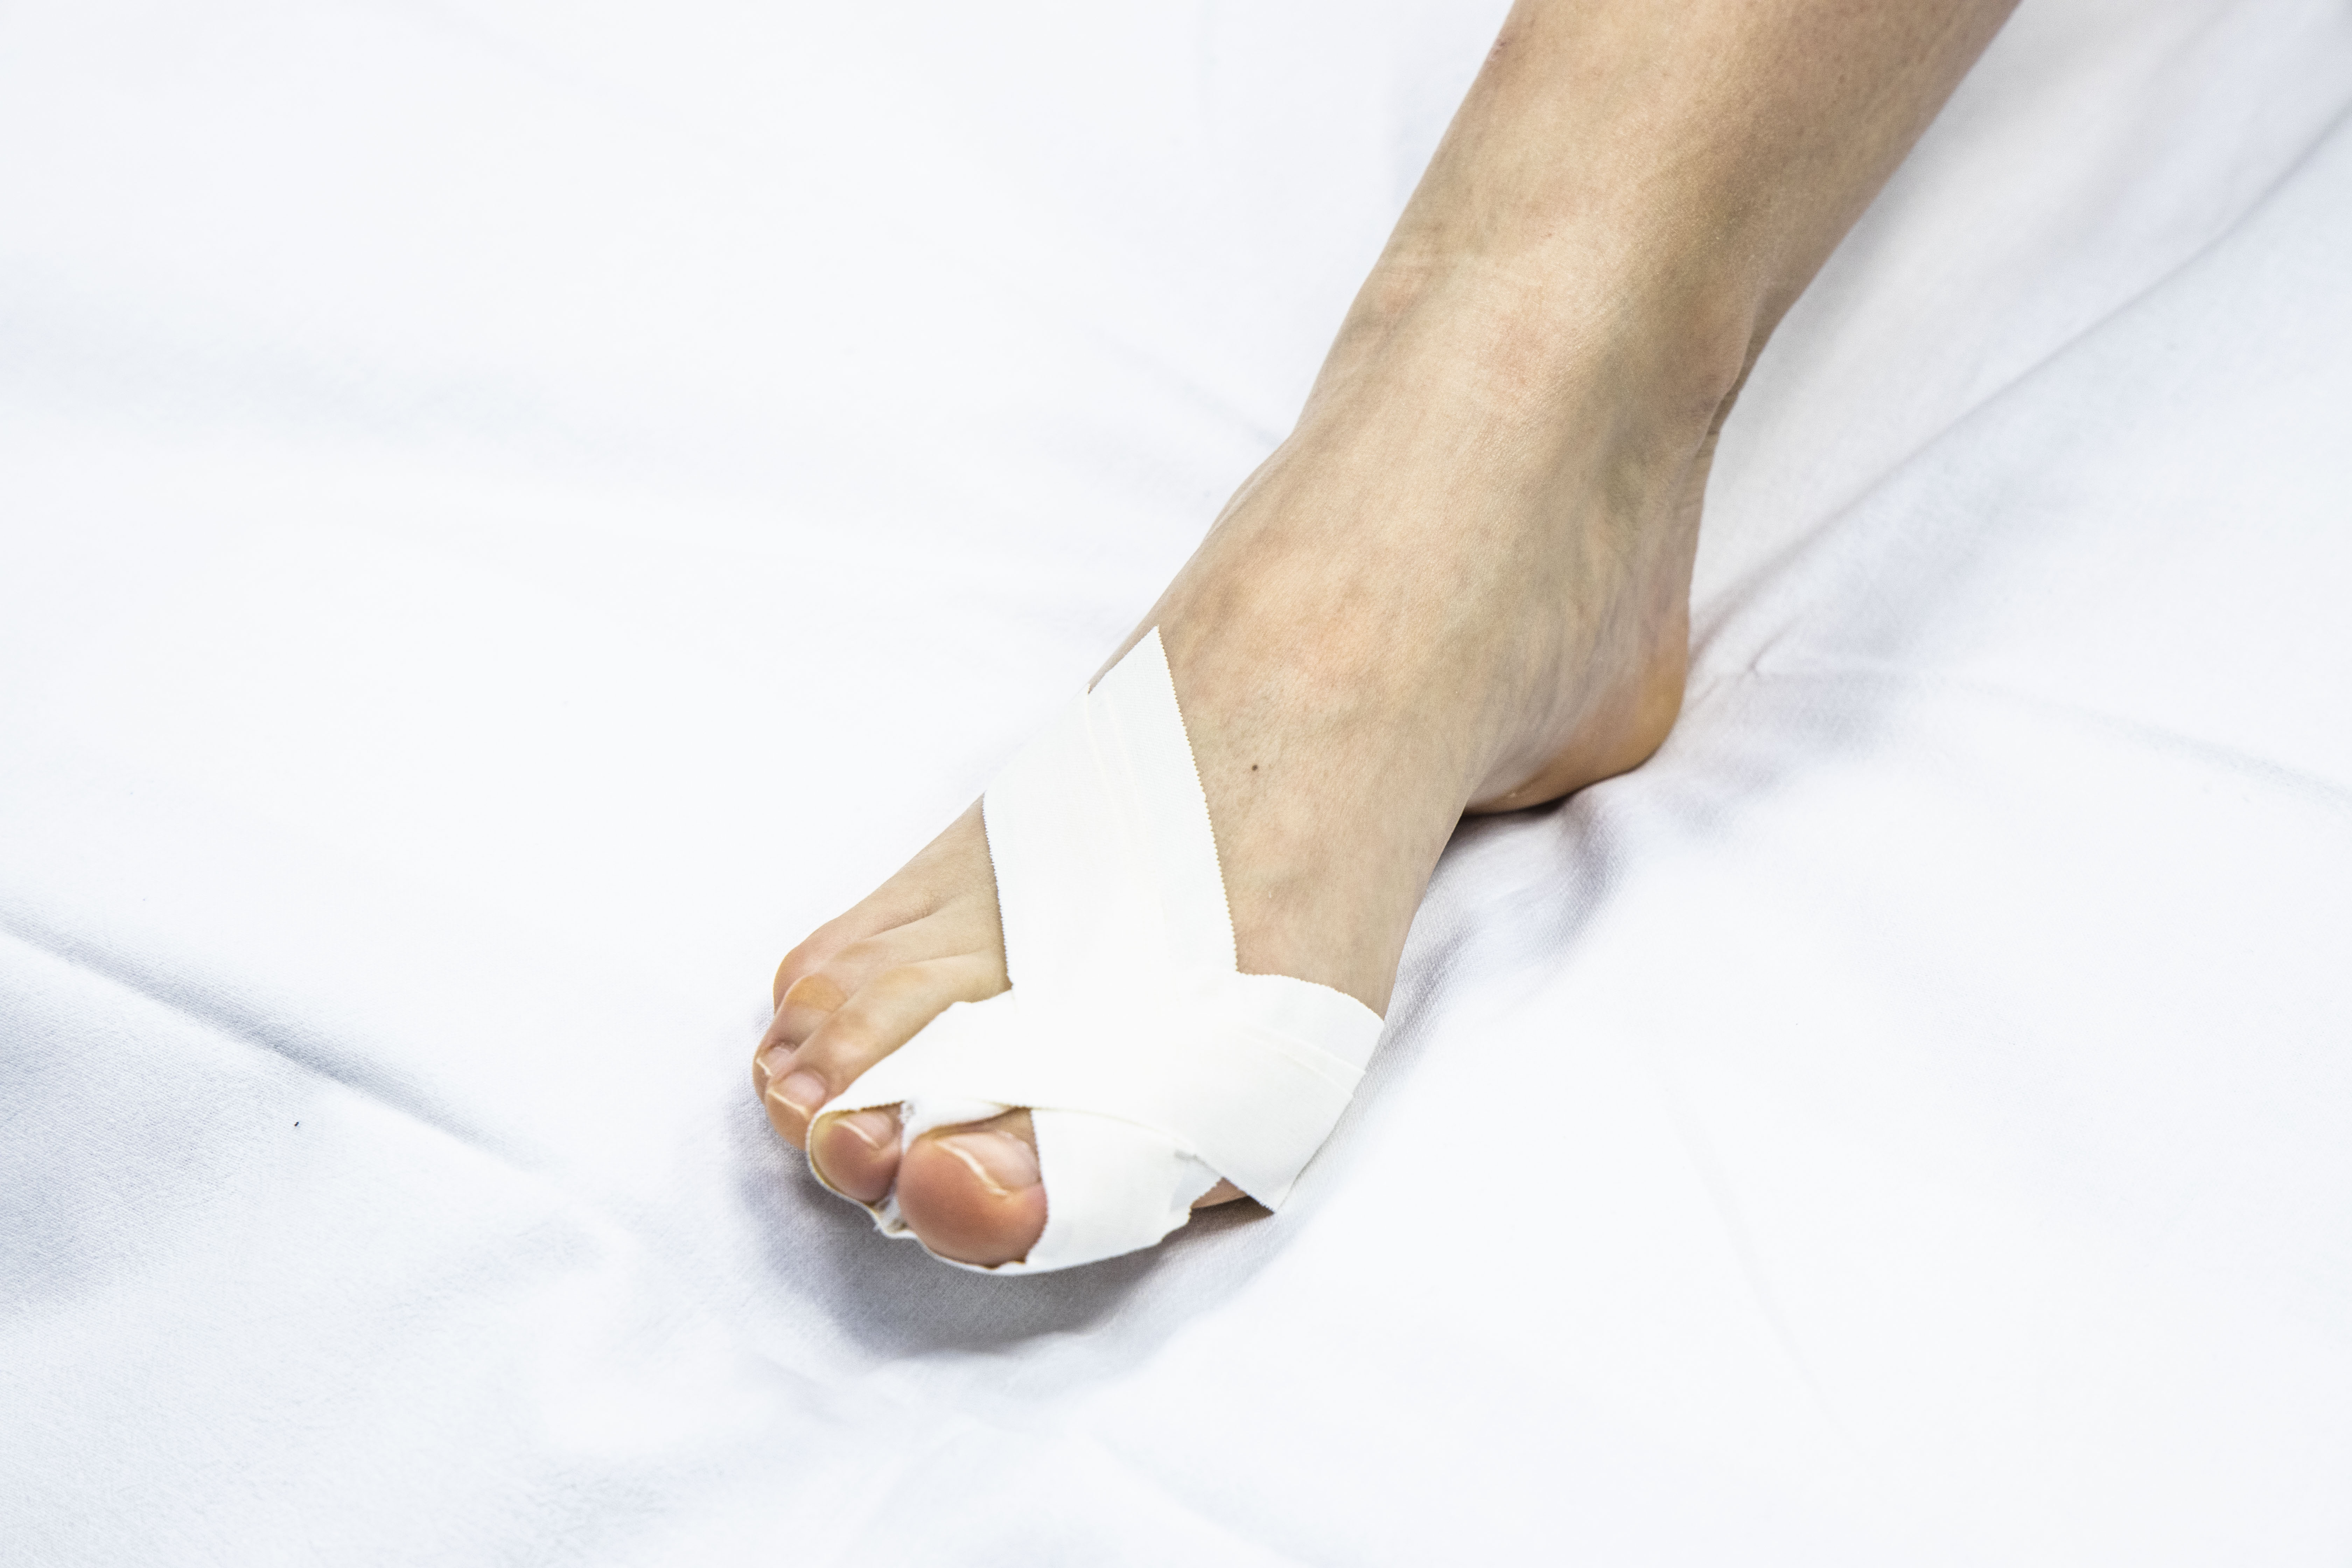 Traitement d'une blessure à l'orteil | AZ Groeninge